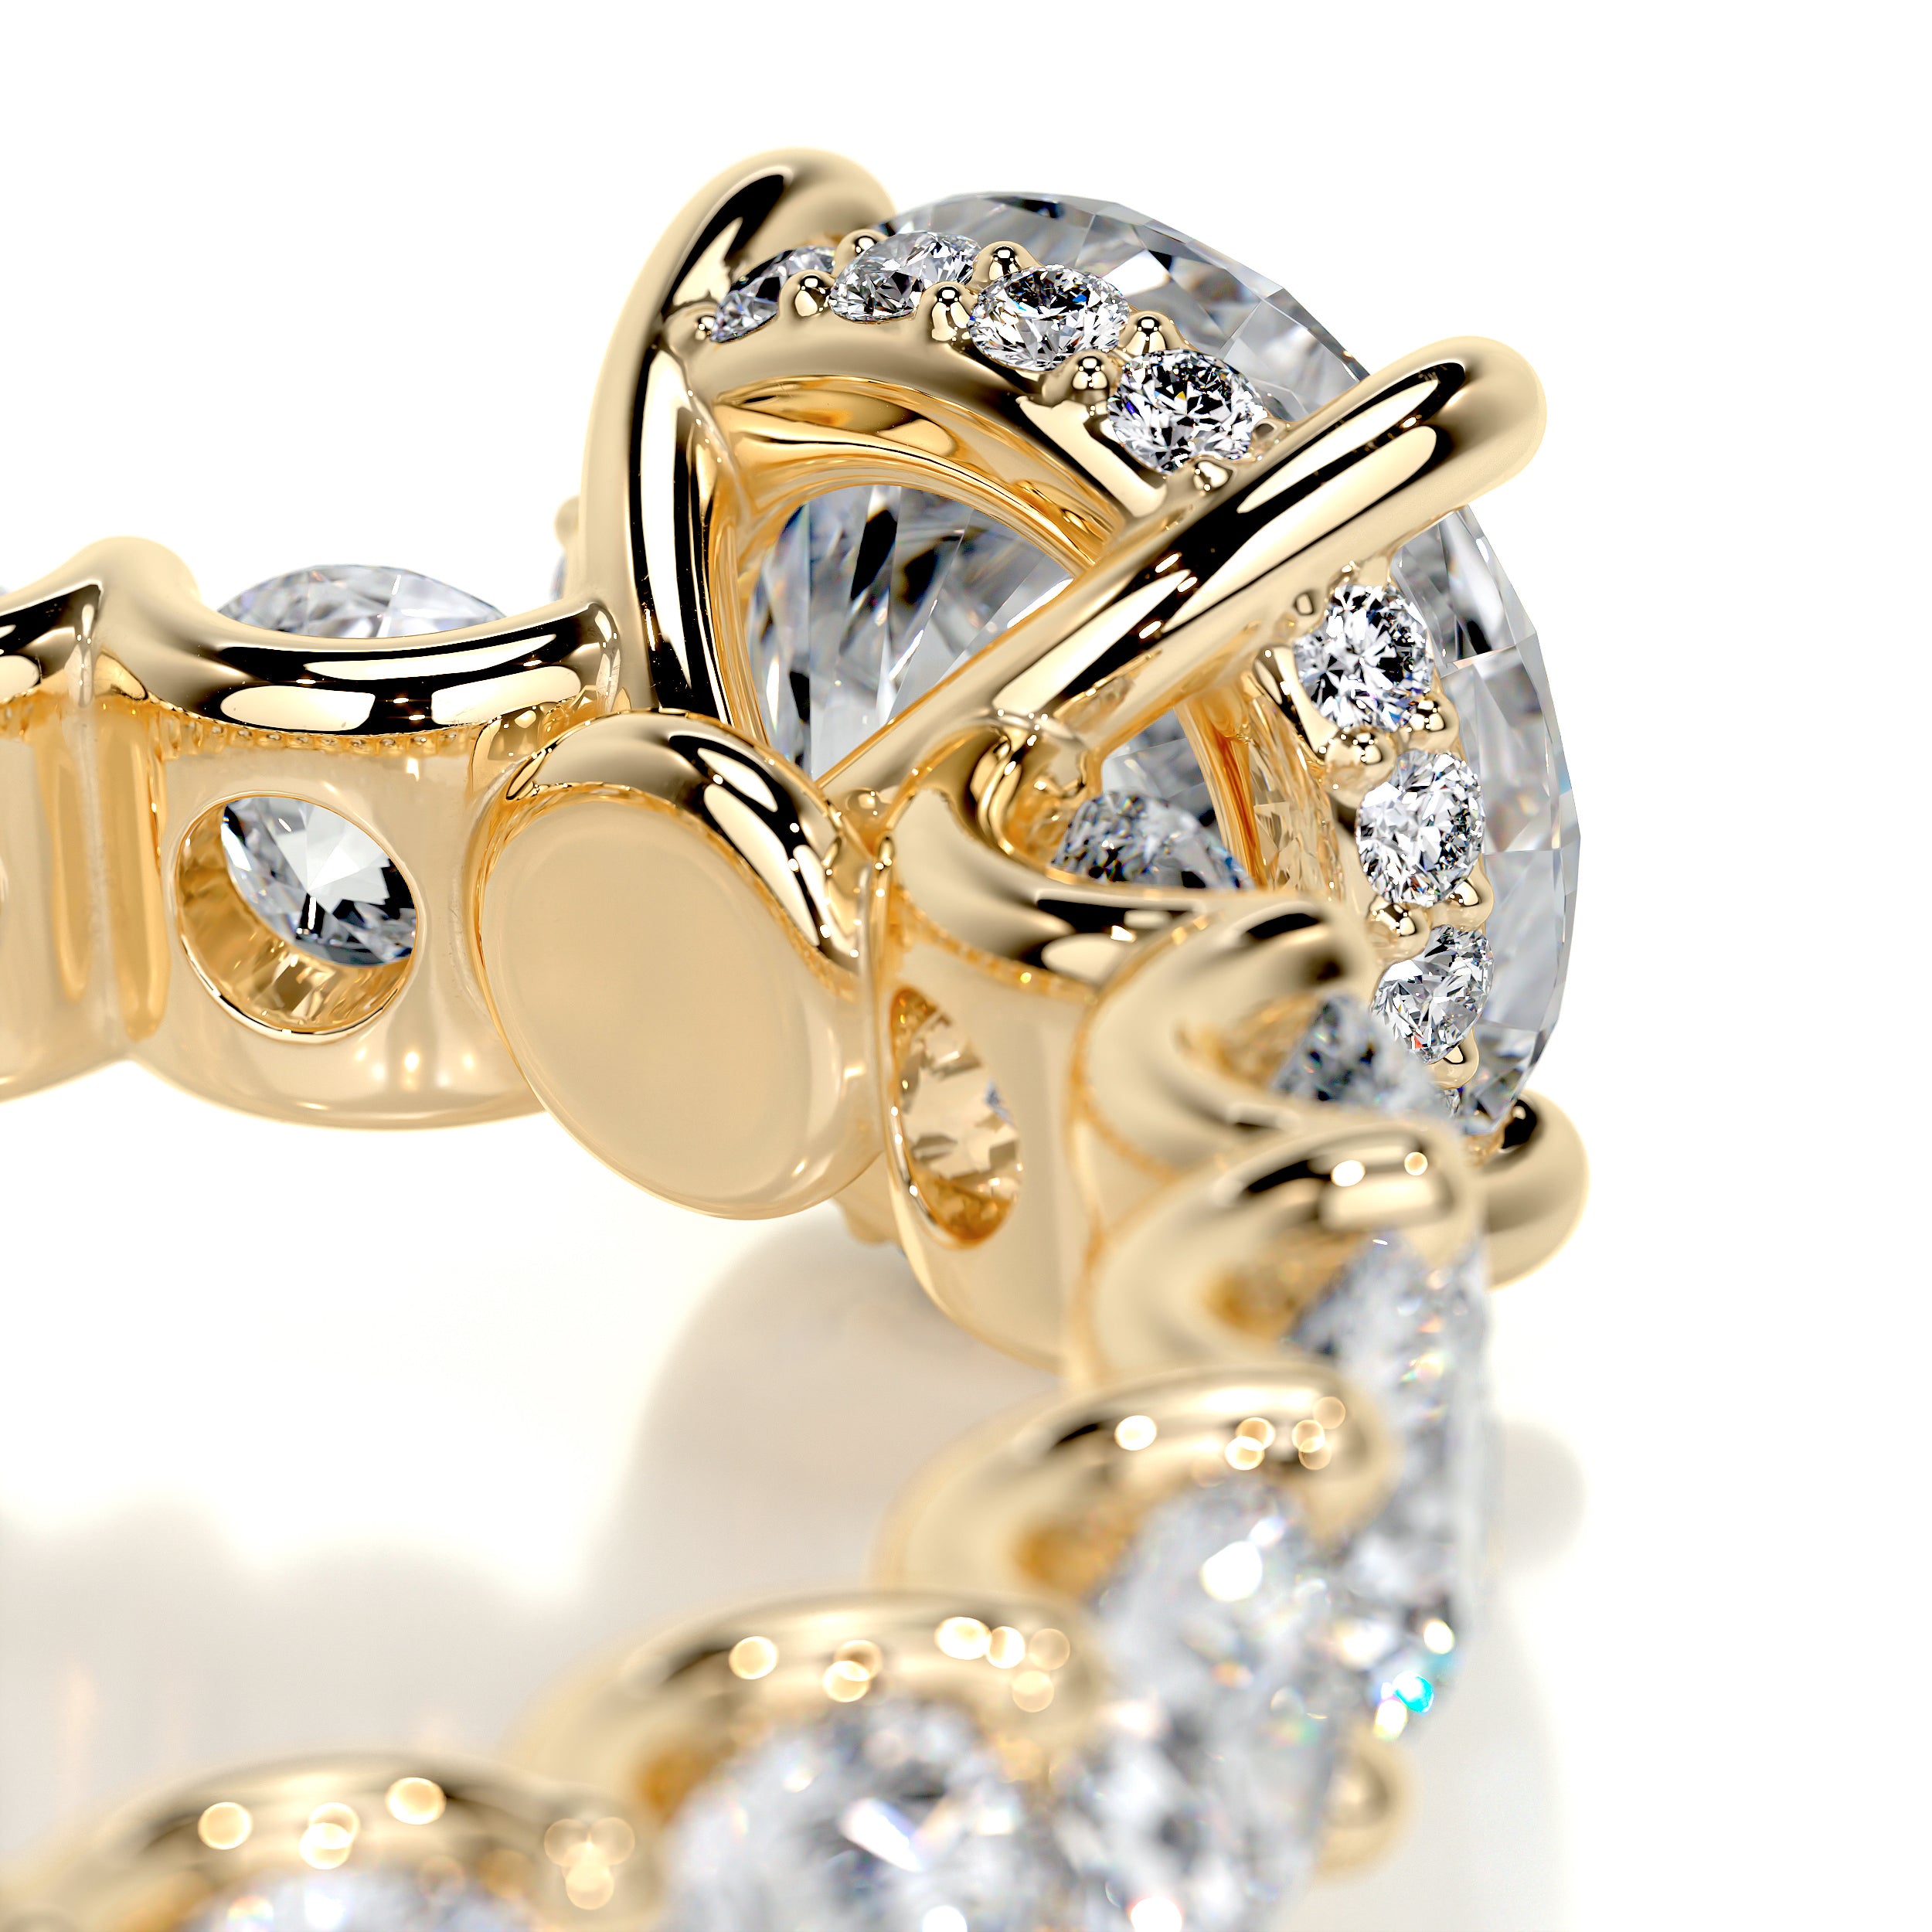 Lola Diamond Engagement Ring   (3.25 Carat) -18K Yellow Gold